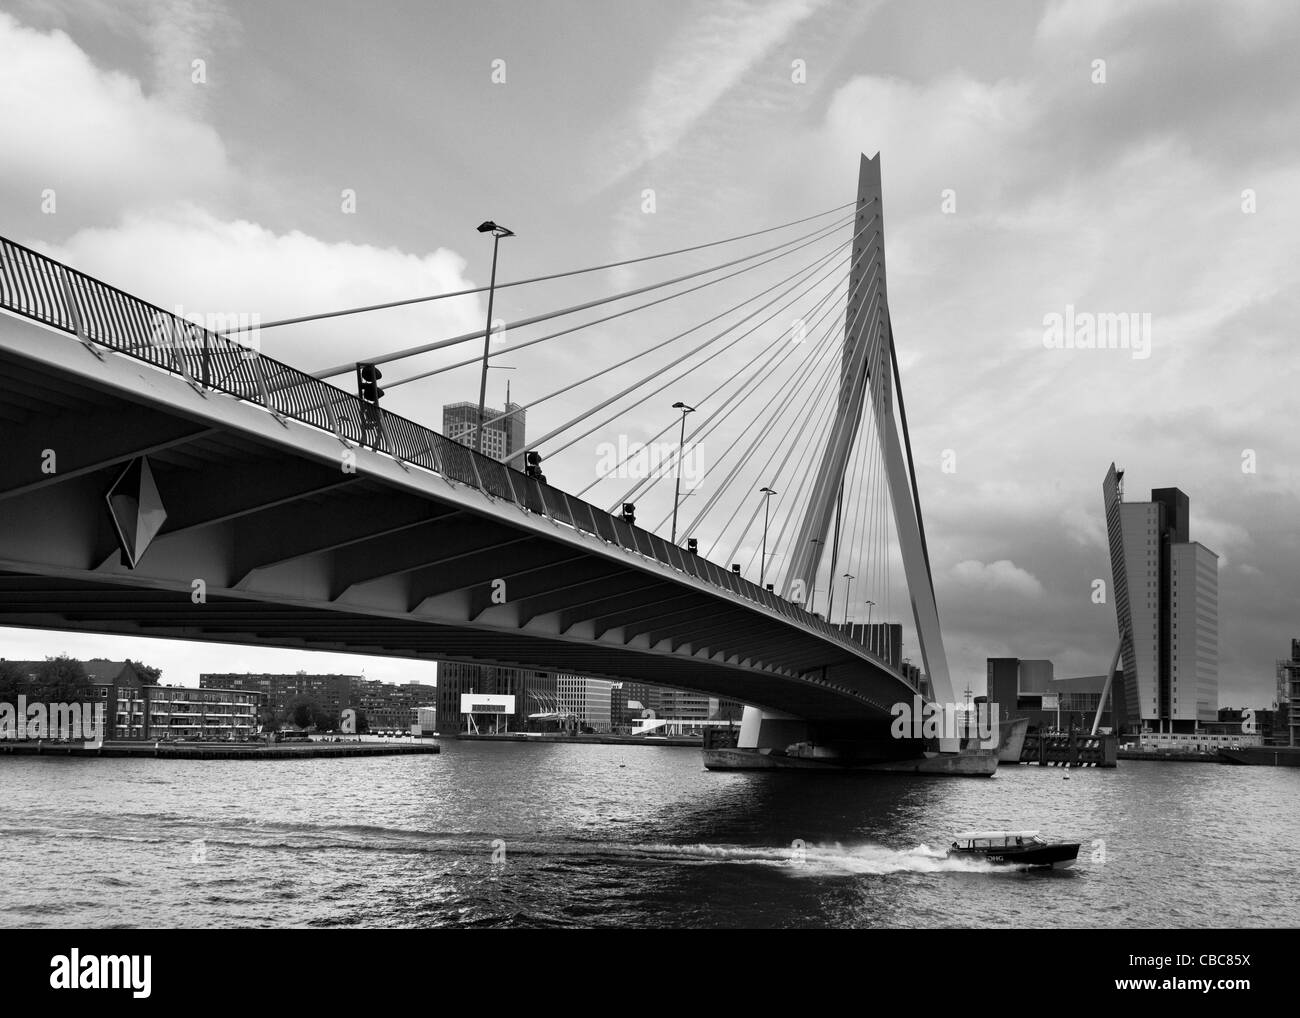 Un taxi d'eau passe sous le pont Erasmus, Rotterdam, Pays-Bas - image monochrome Banque D'Images